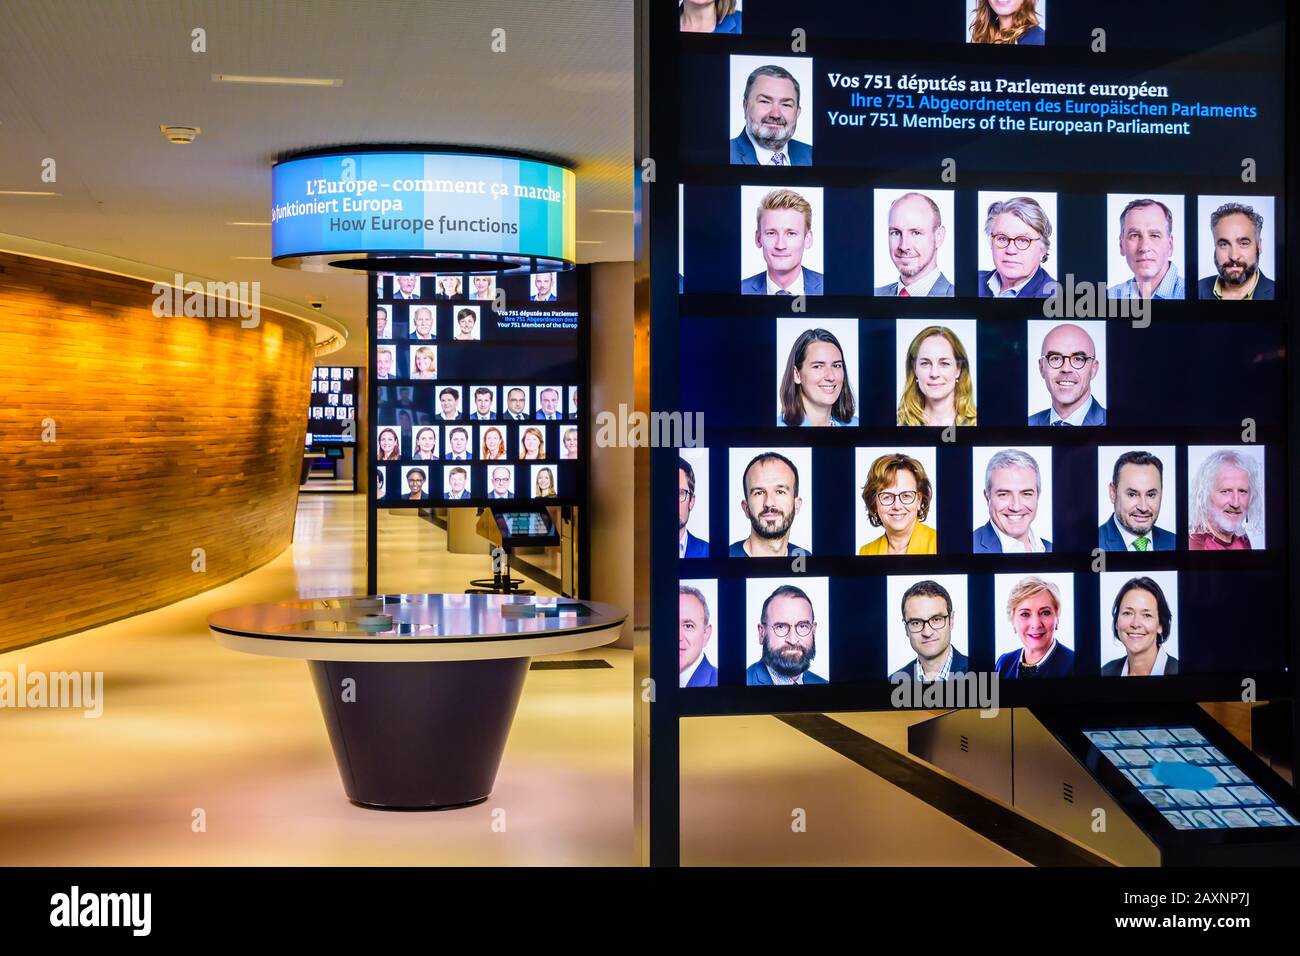 Retratos de los diputados al Parlamento Europeo expuestos en el Simone Veil parlamentarium, un espacio pedagógico interactivo en el edificio Louise Weiss en Estrasburgo, Francia Foto de stock